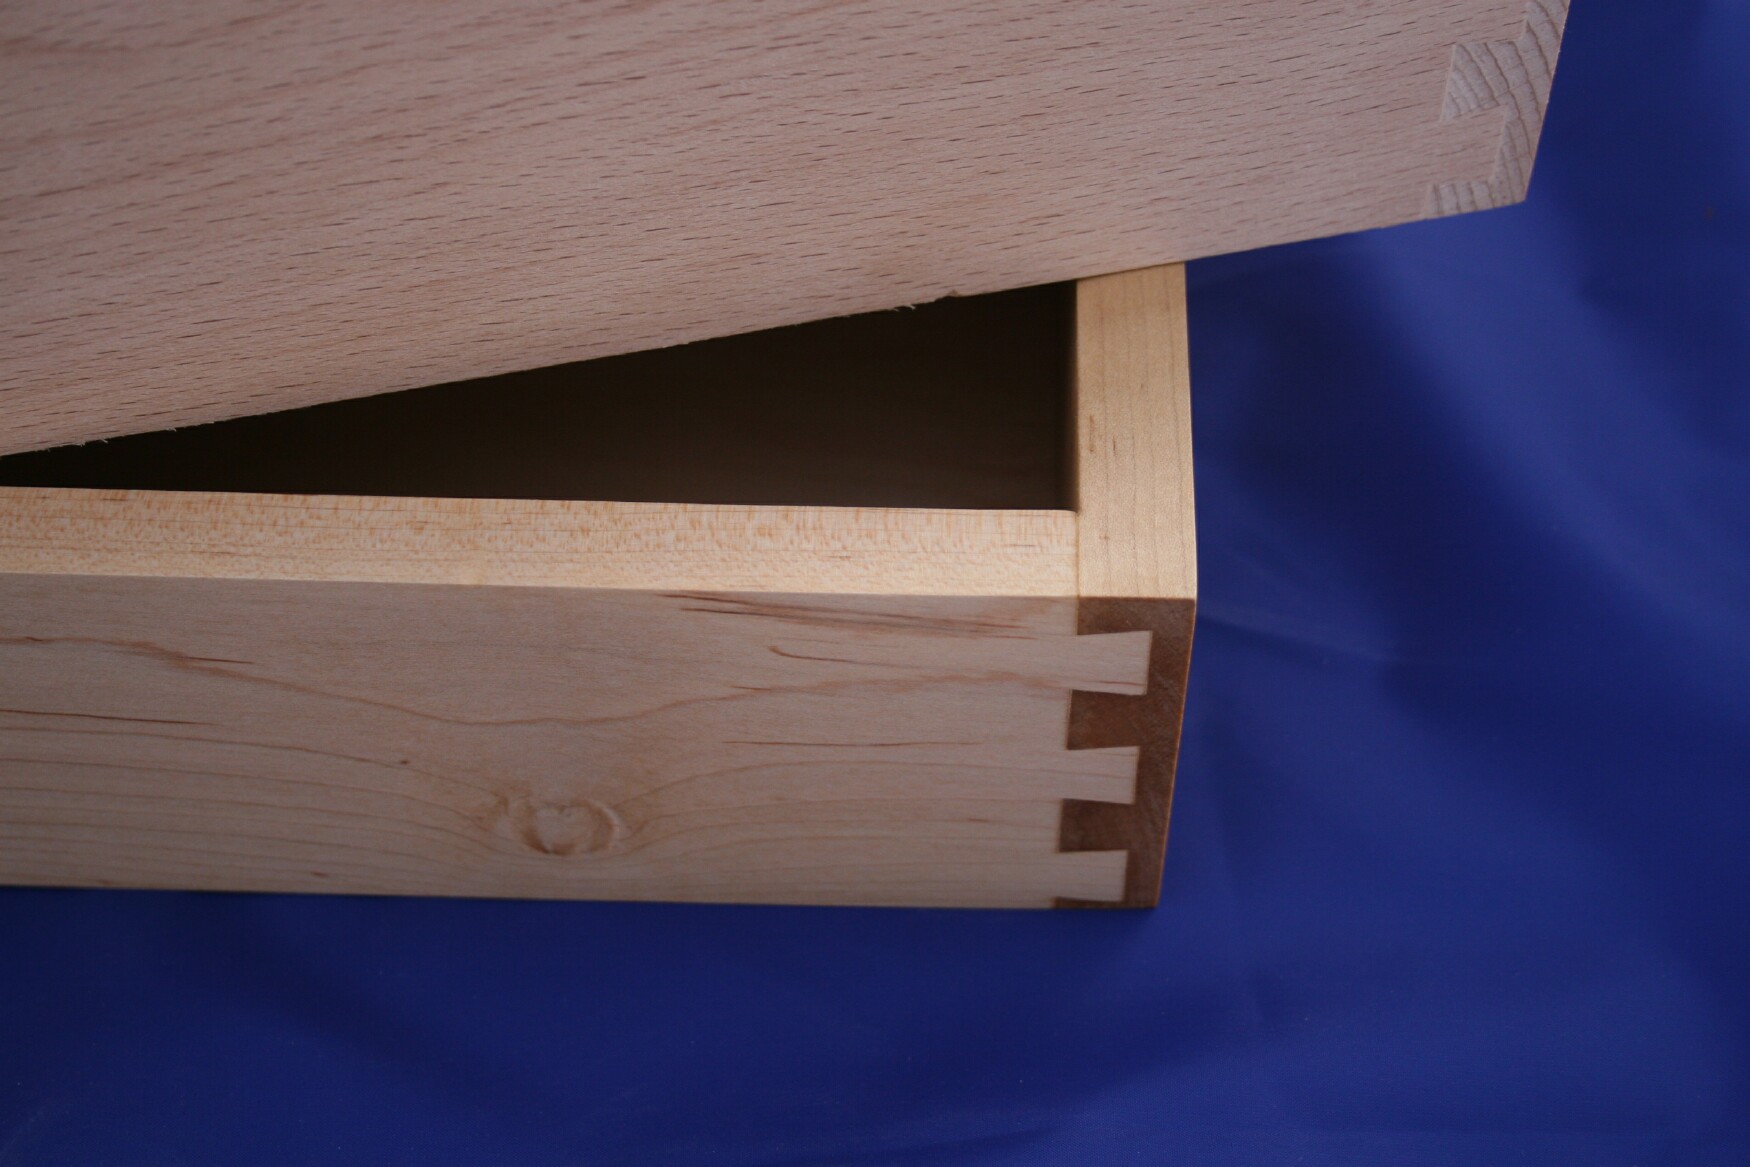 Kitchen Drawer System, Träger Box